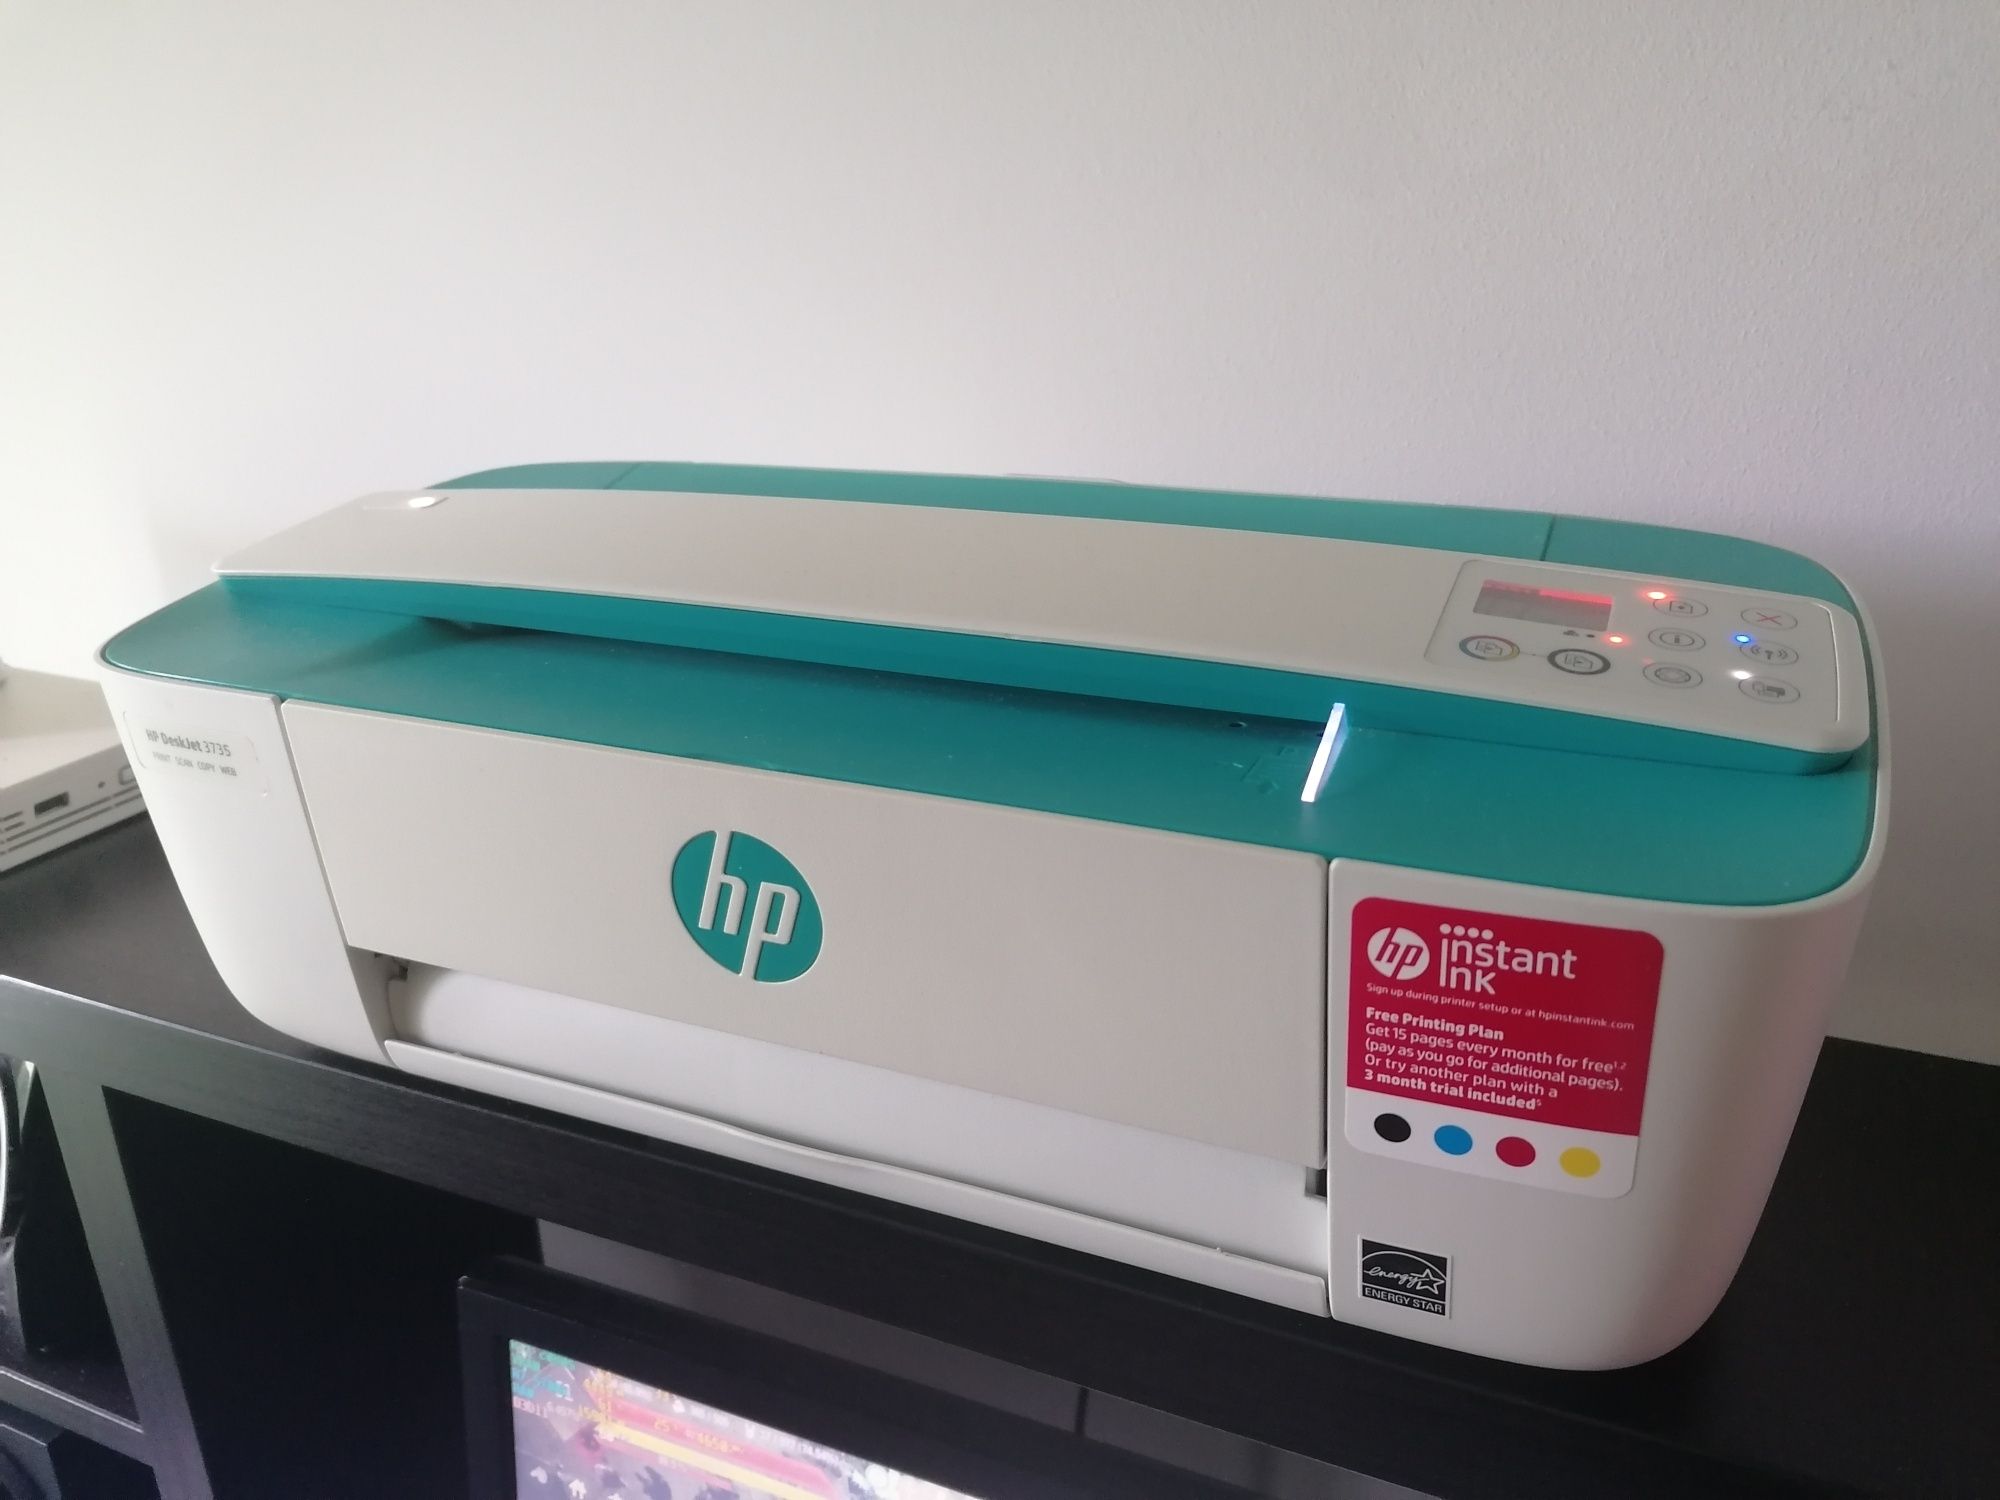 Impressora HP scan copy compacta Wireless/sem fio e USB usada estimada